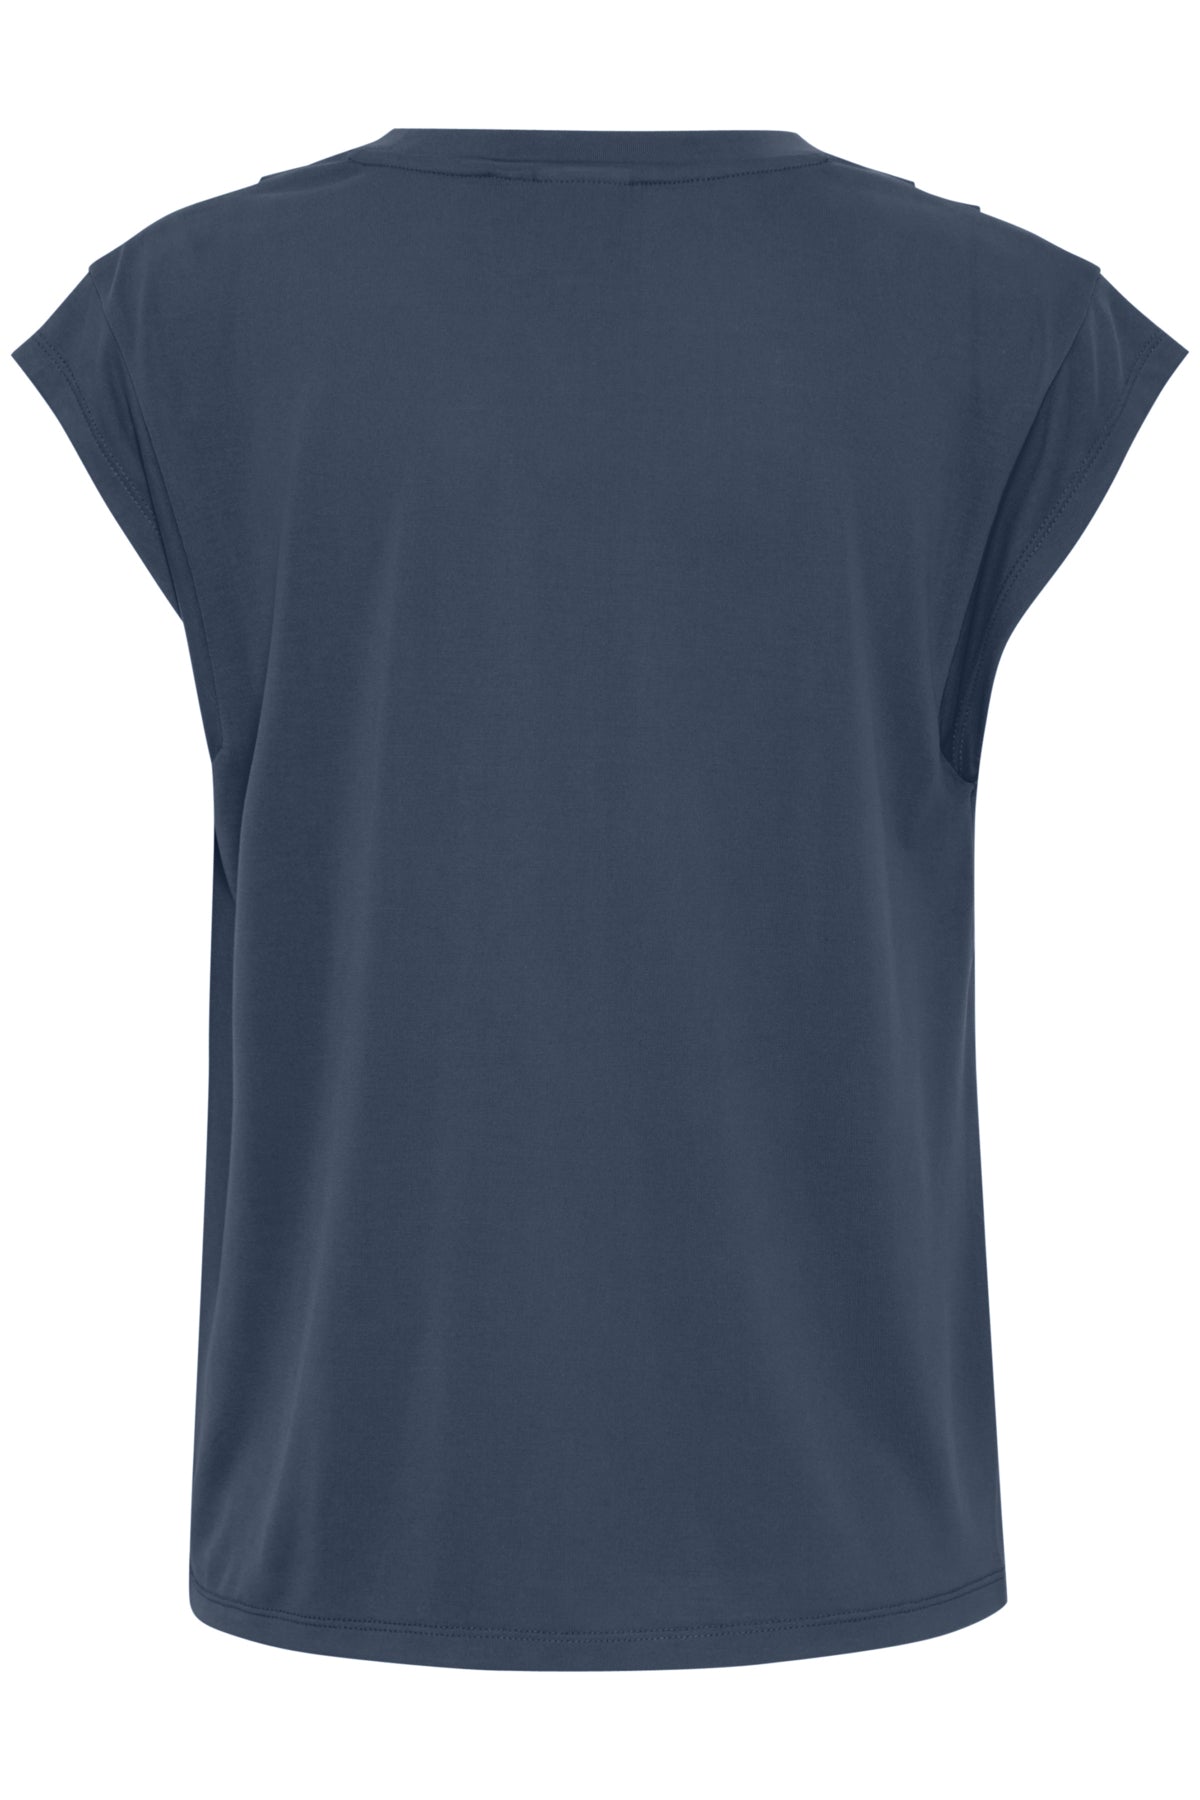 Camiseta azul oscuro con fruncido en hombros